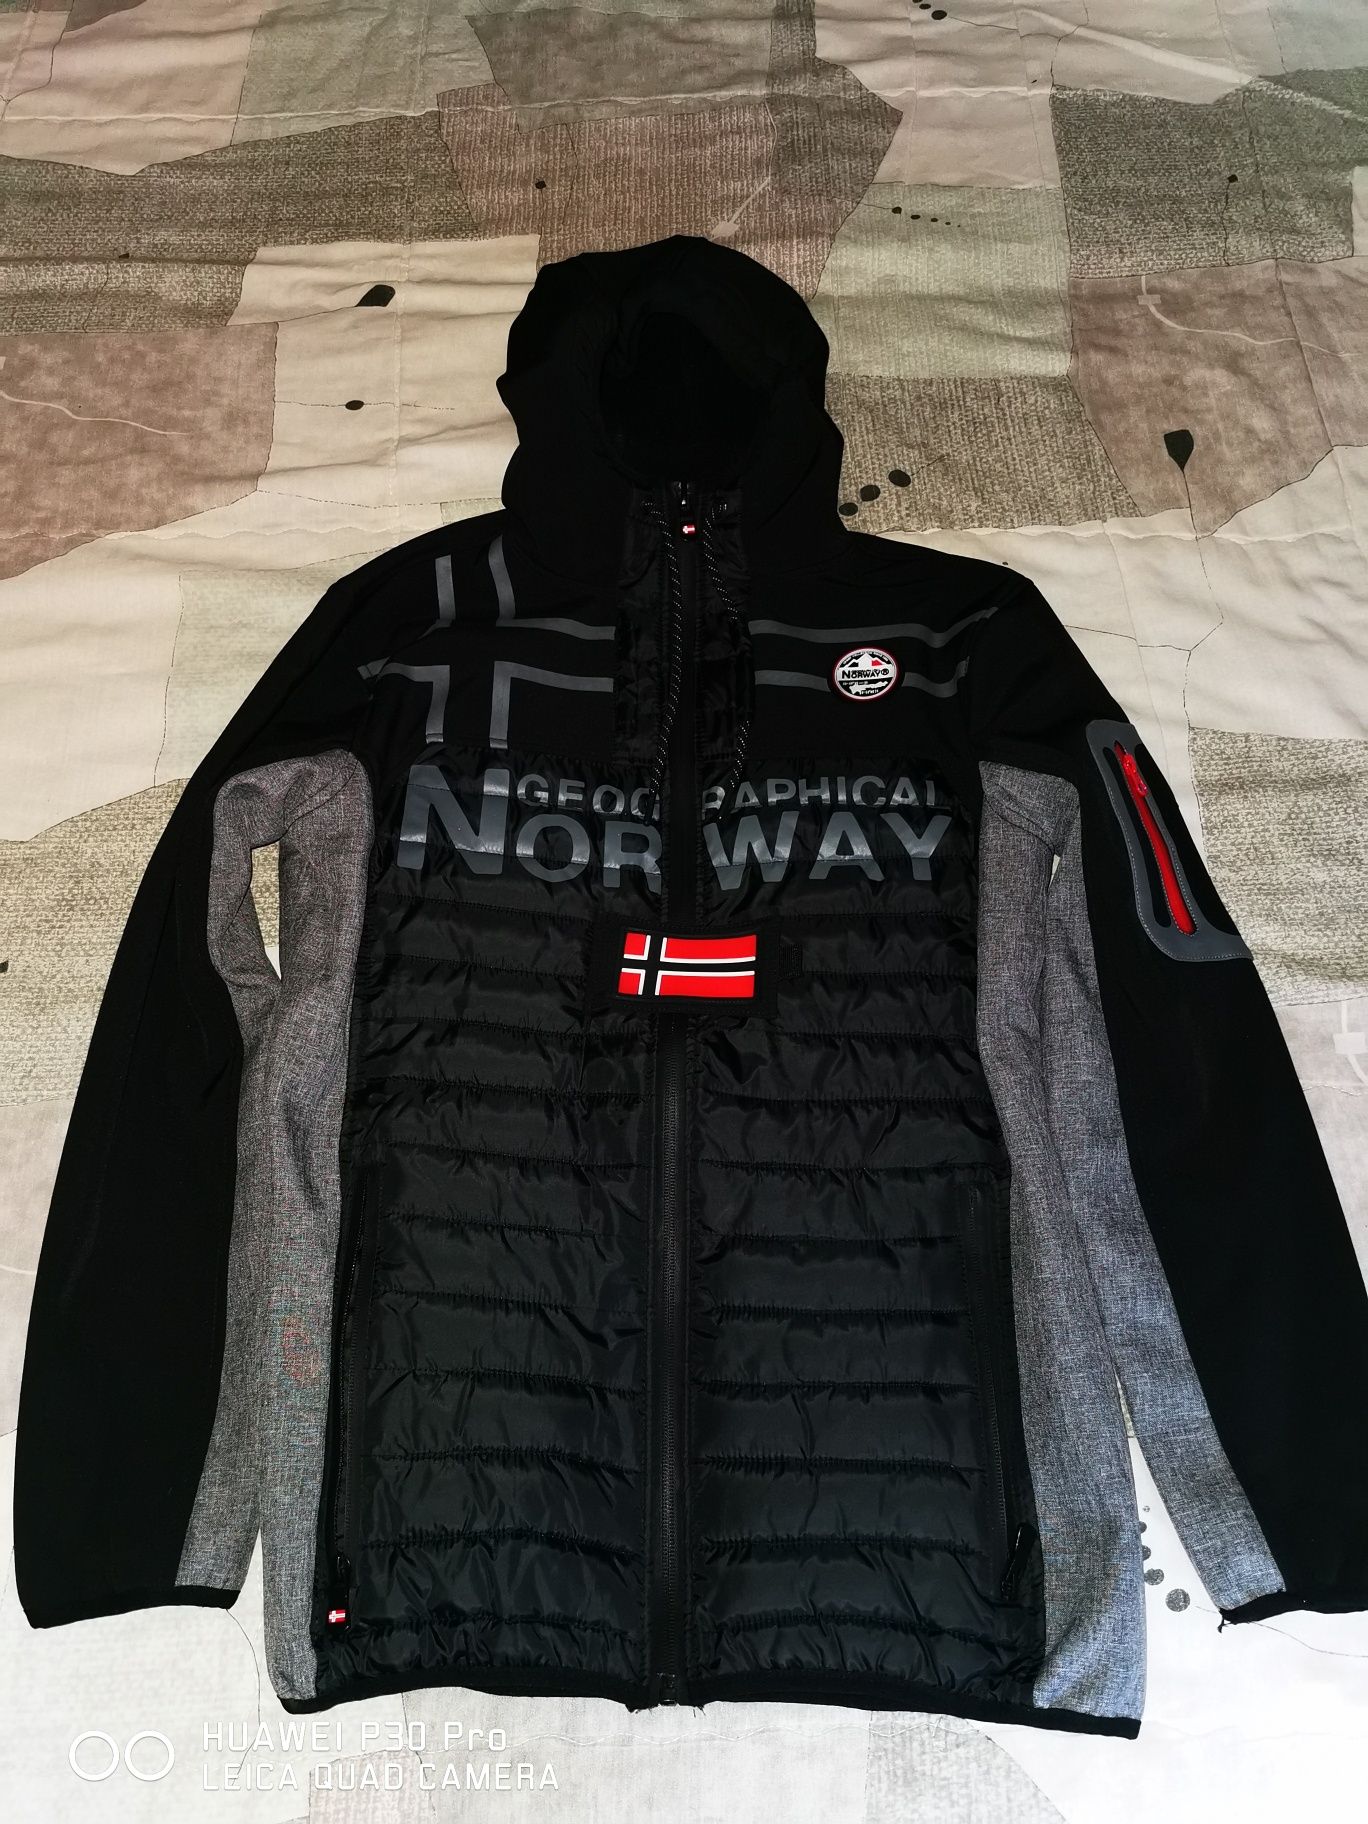 Мъжко яке на фирмата Geographical Norway, размер S, ново.